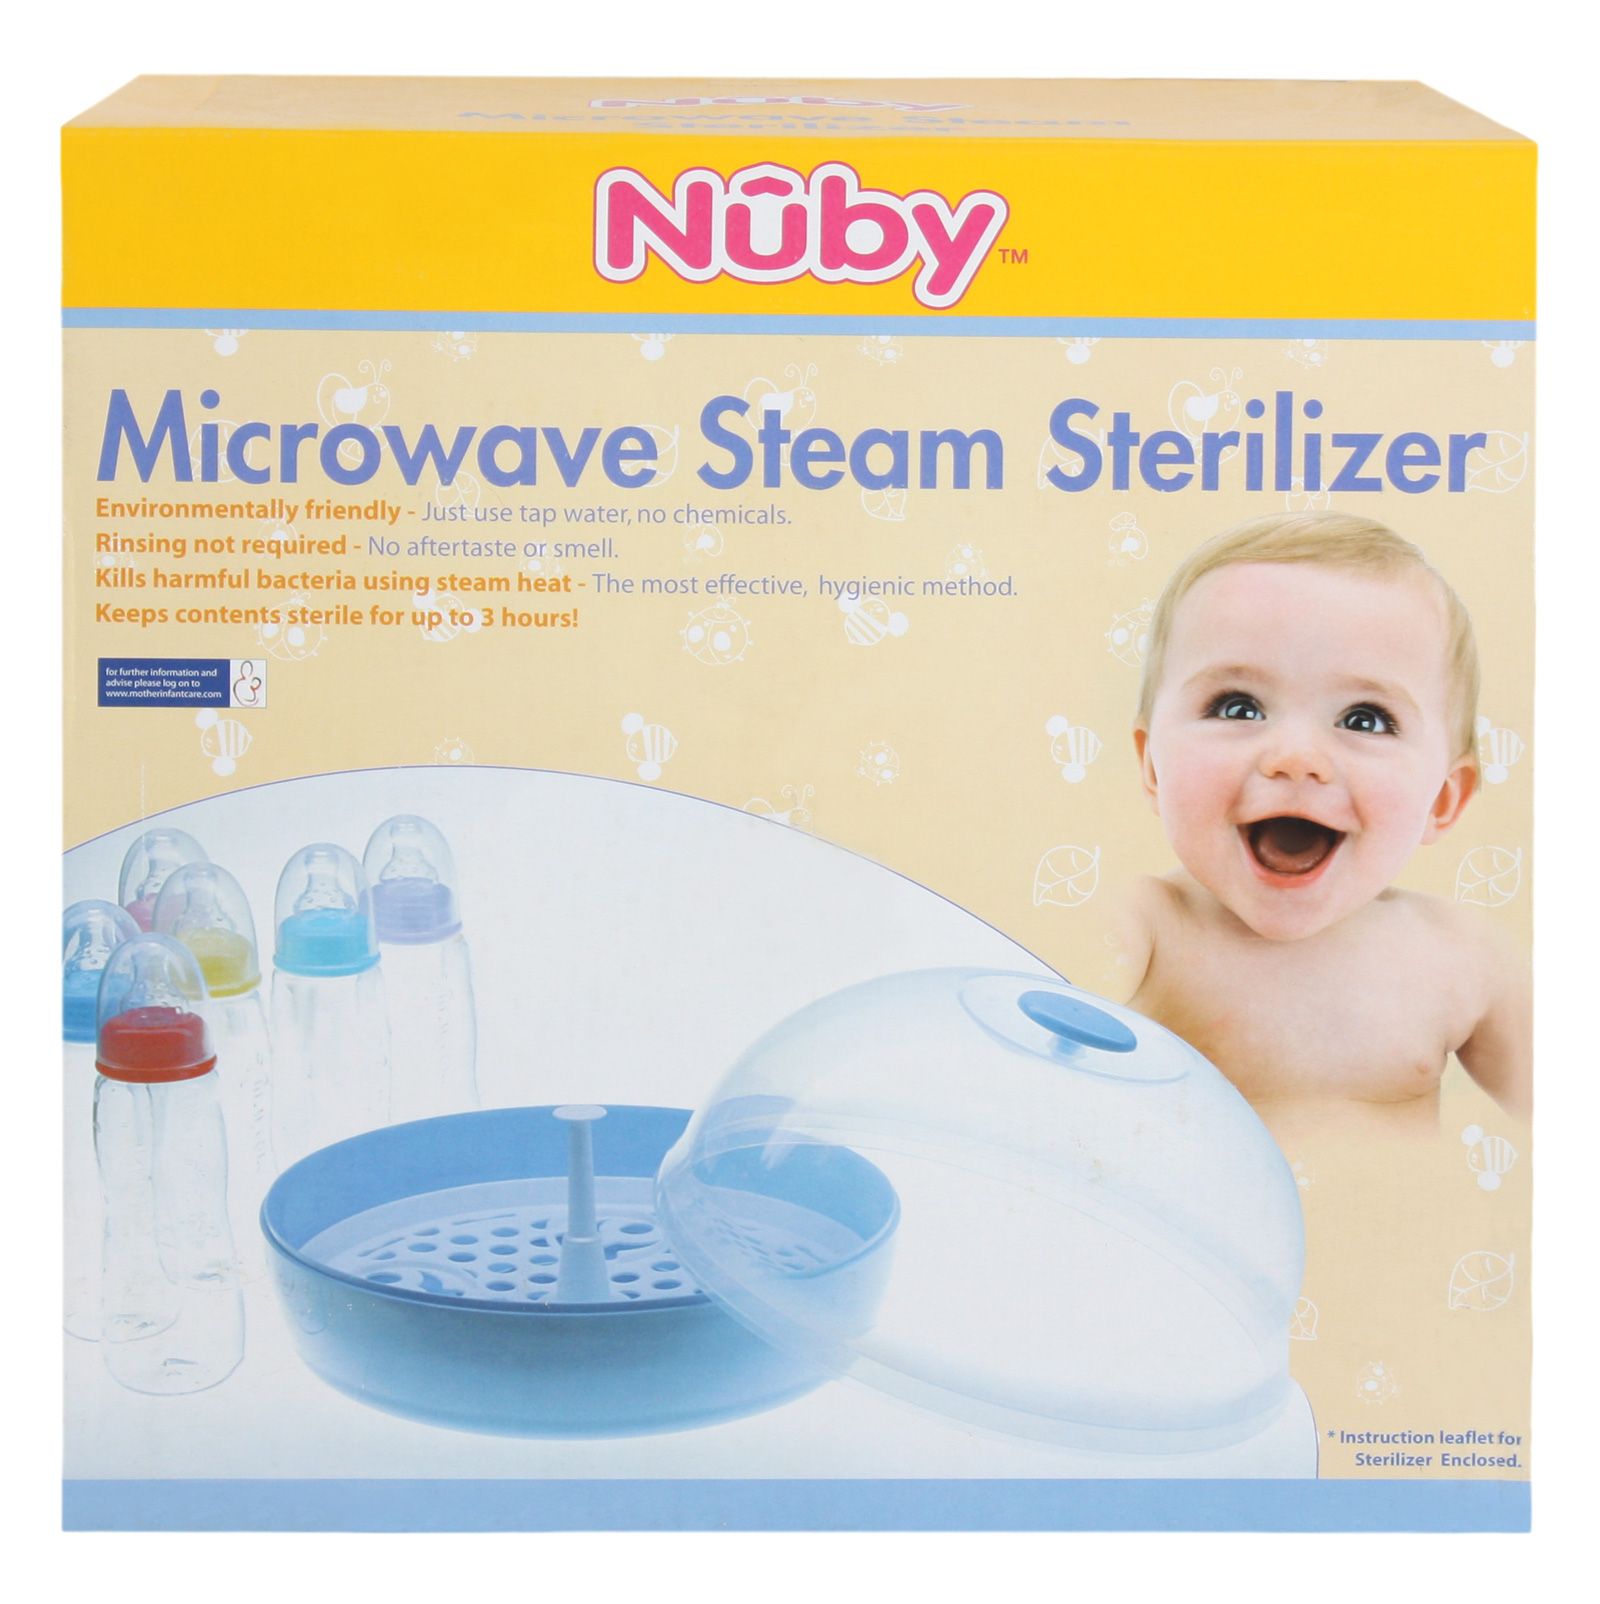 Nuby - Microwave Steam Sterilizer